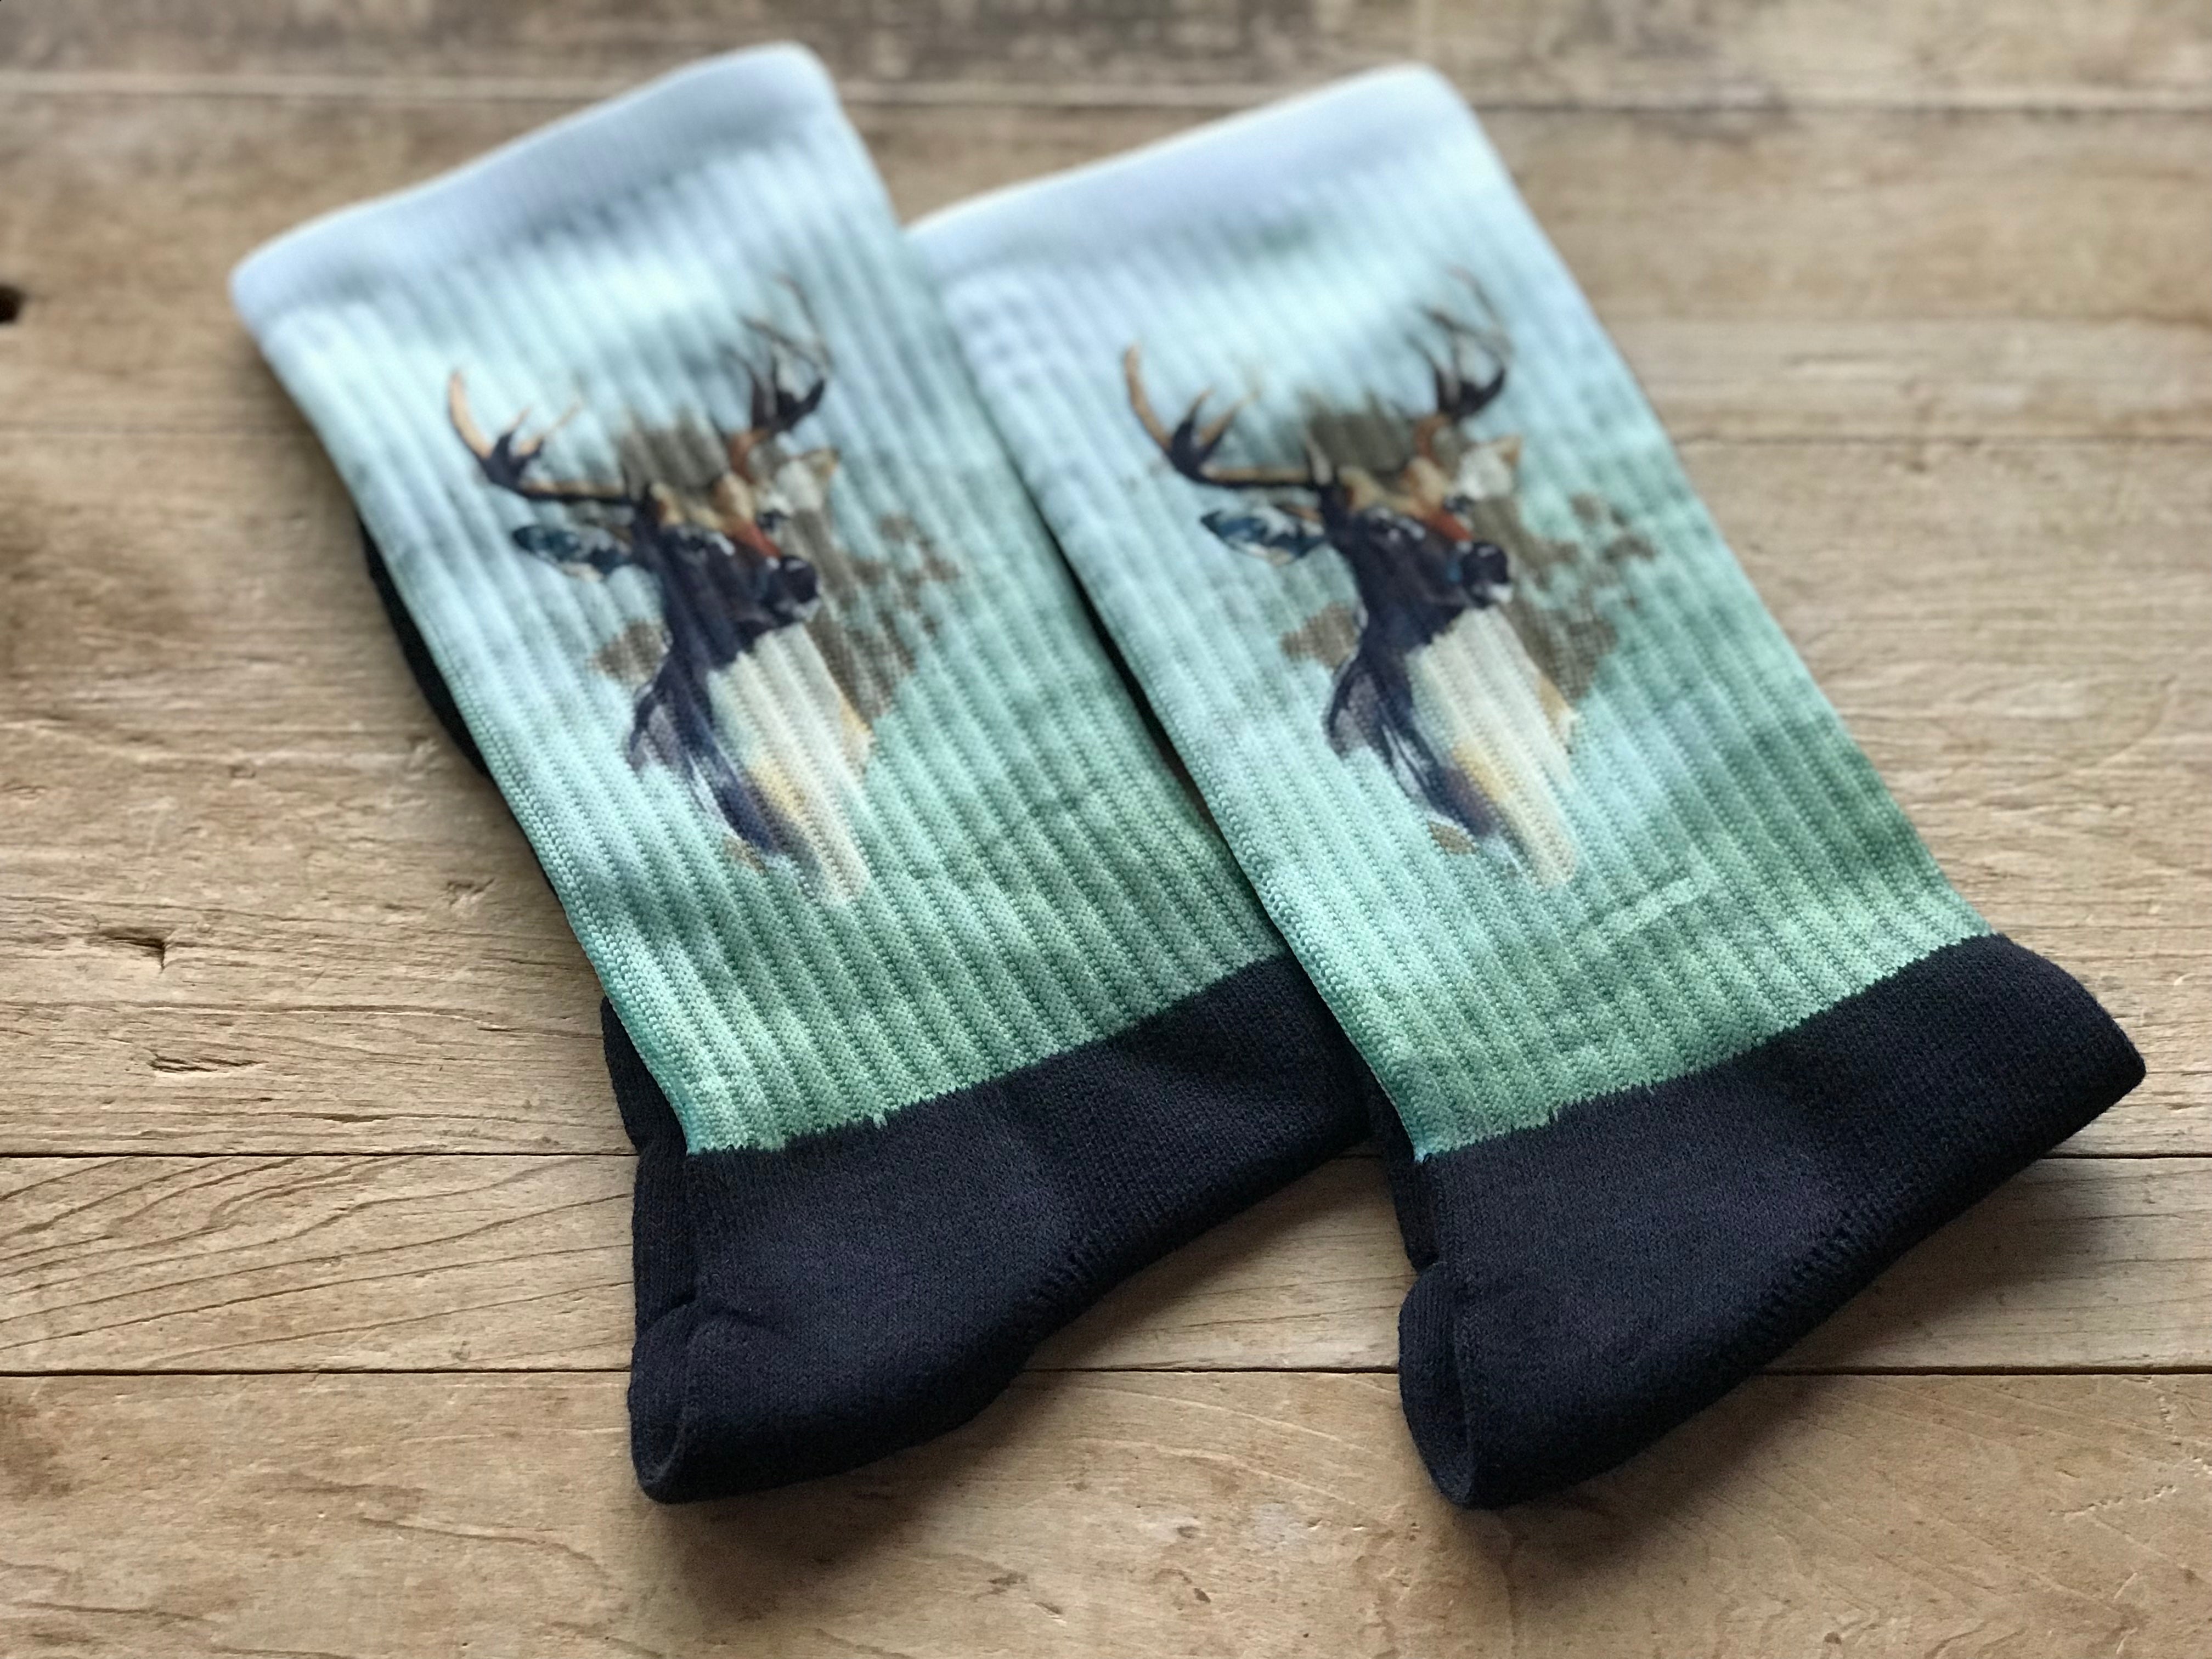 Whitetail Deer Crew Socks